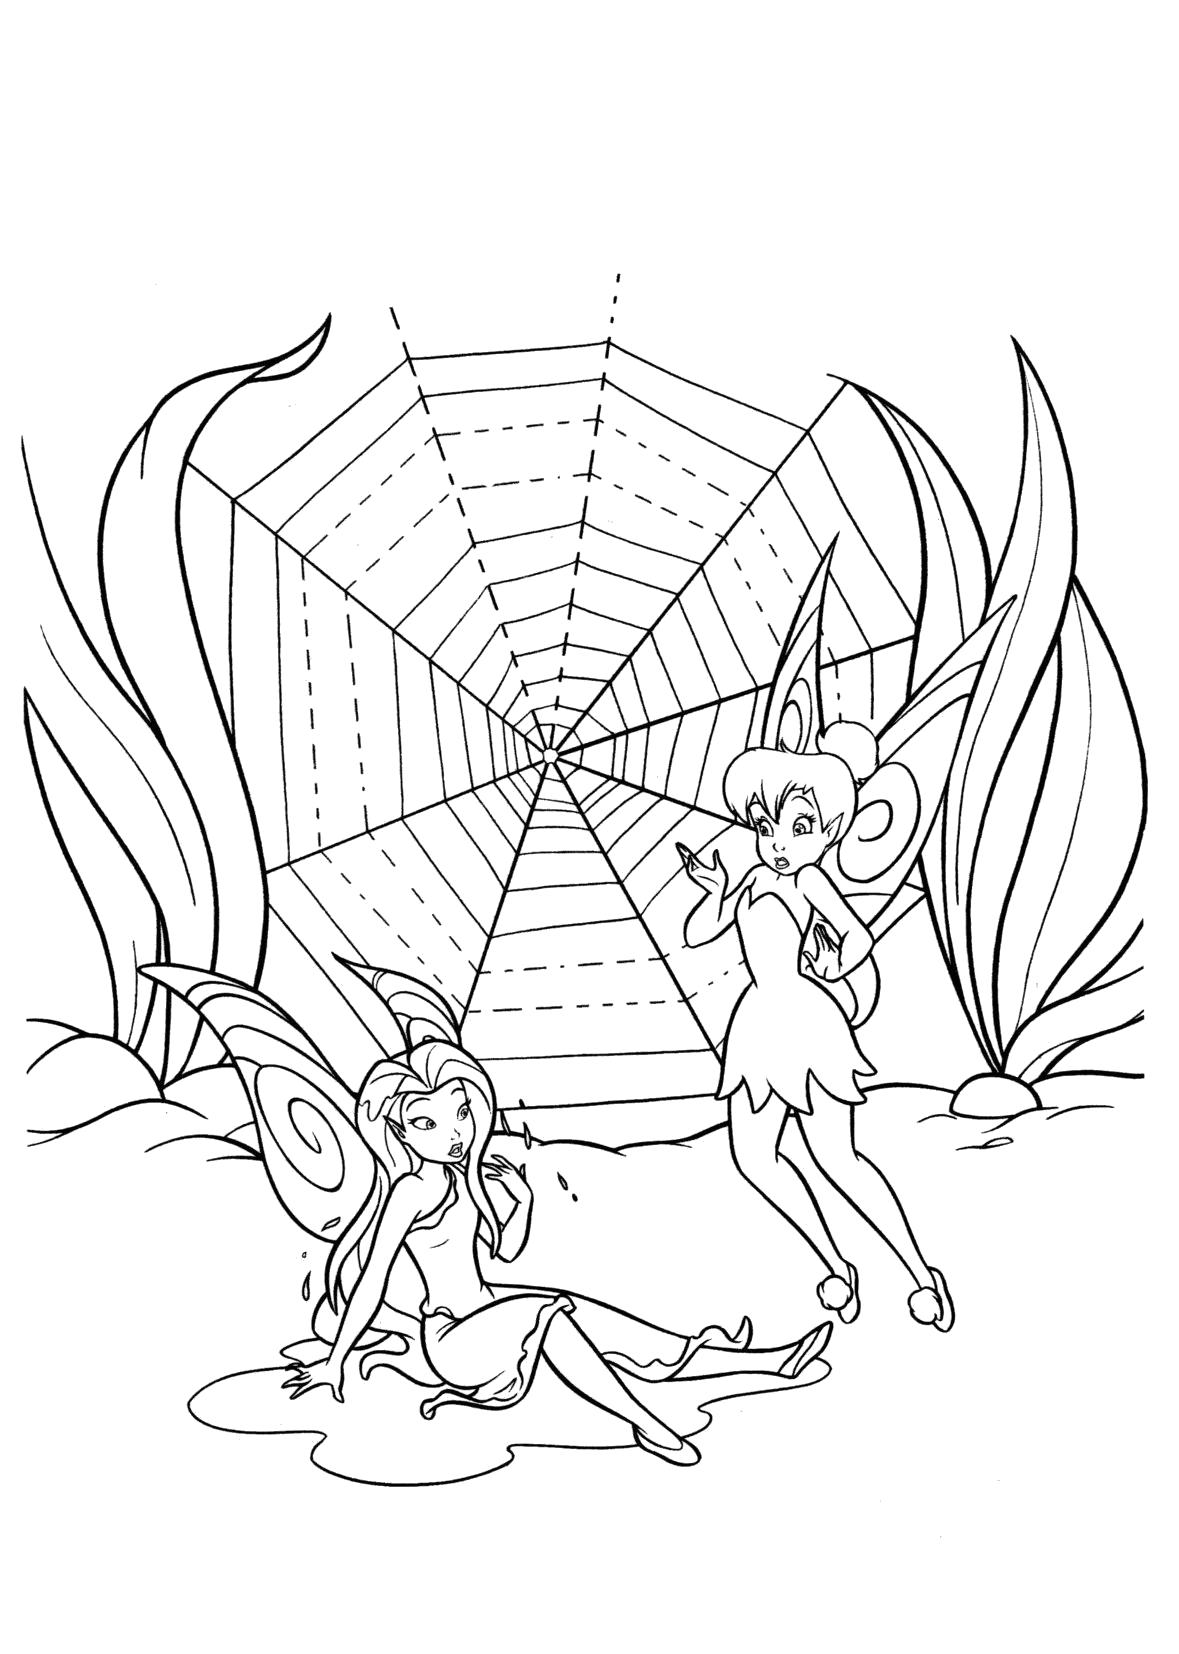 Раскраска  Серебрянка и Динь-Динь рядом с паутиной. Скачать фея.  Распечатать мифические существа